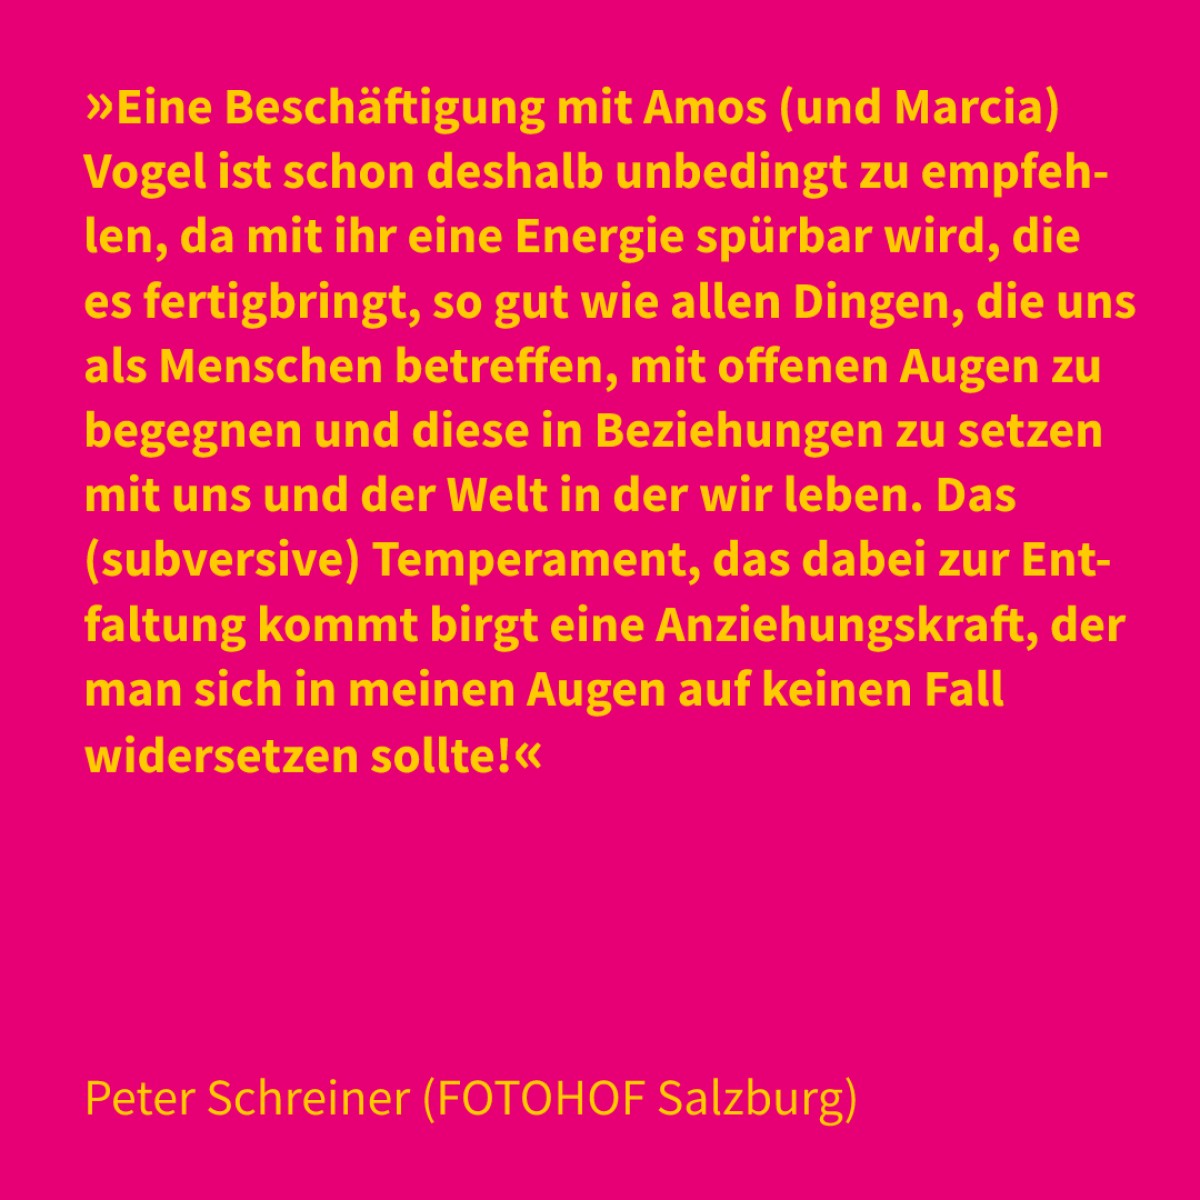 Peter Schreiner (FOTOHOF Salzburg)